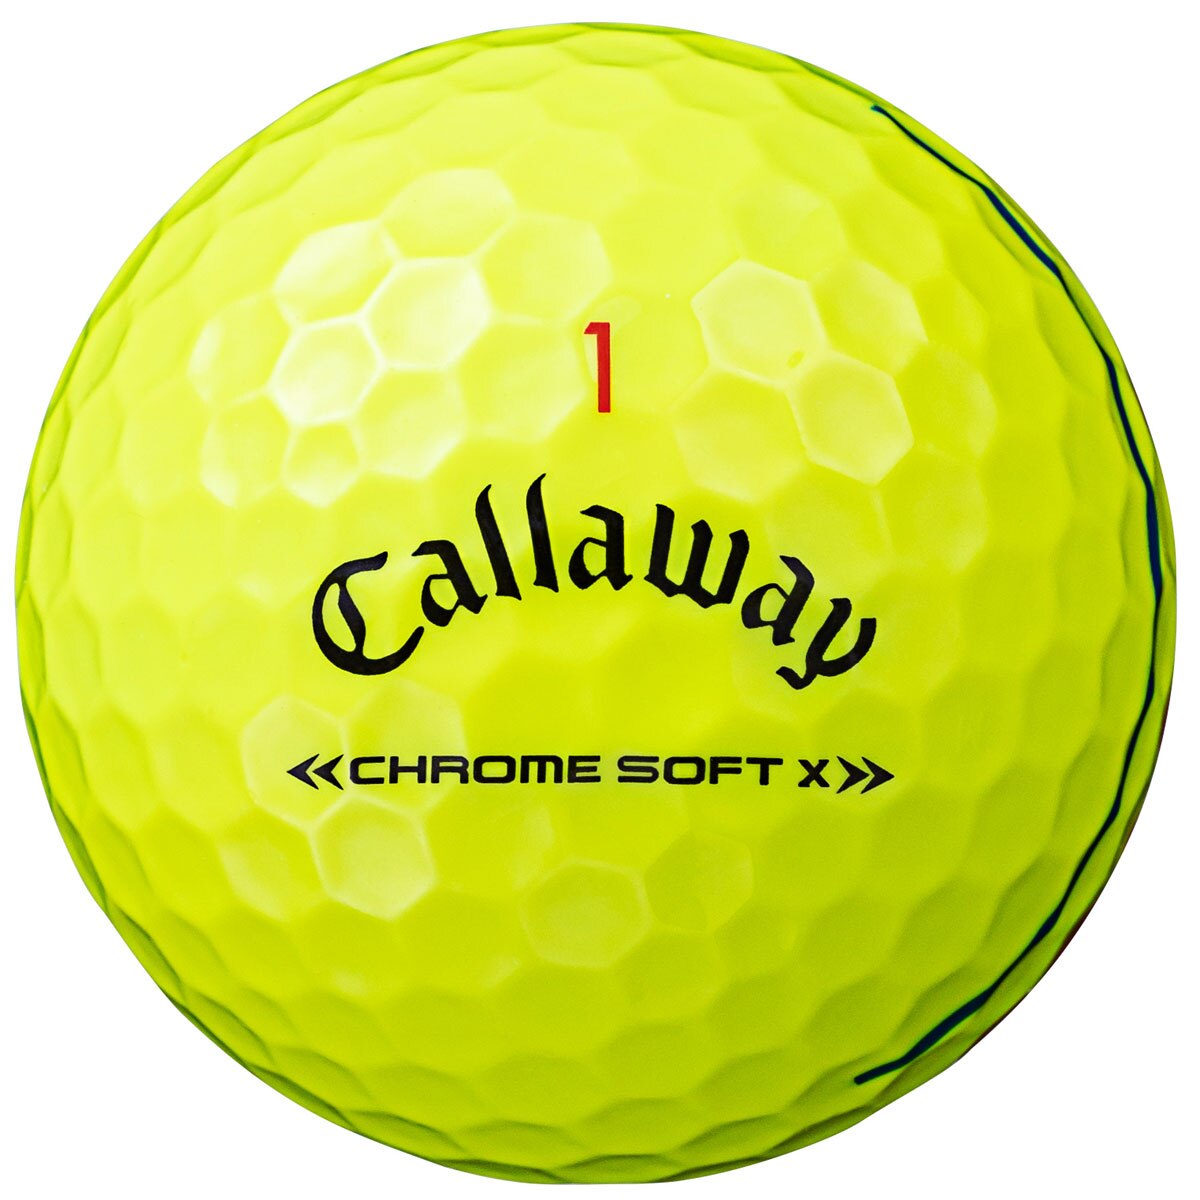 キャロウェイ ゴルフボール クロムソフト 白×赤 2ダース 新品未使用